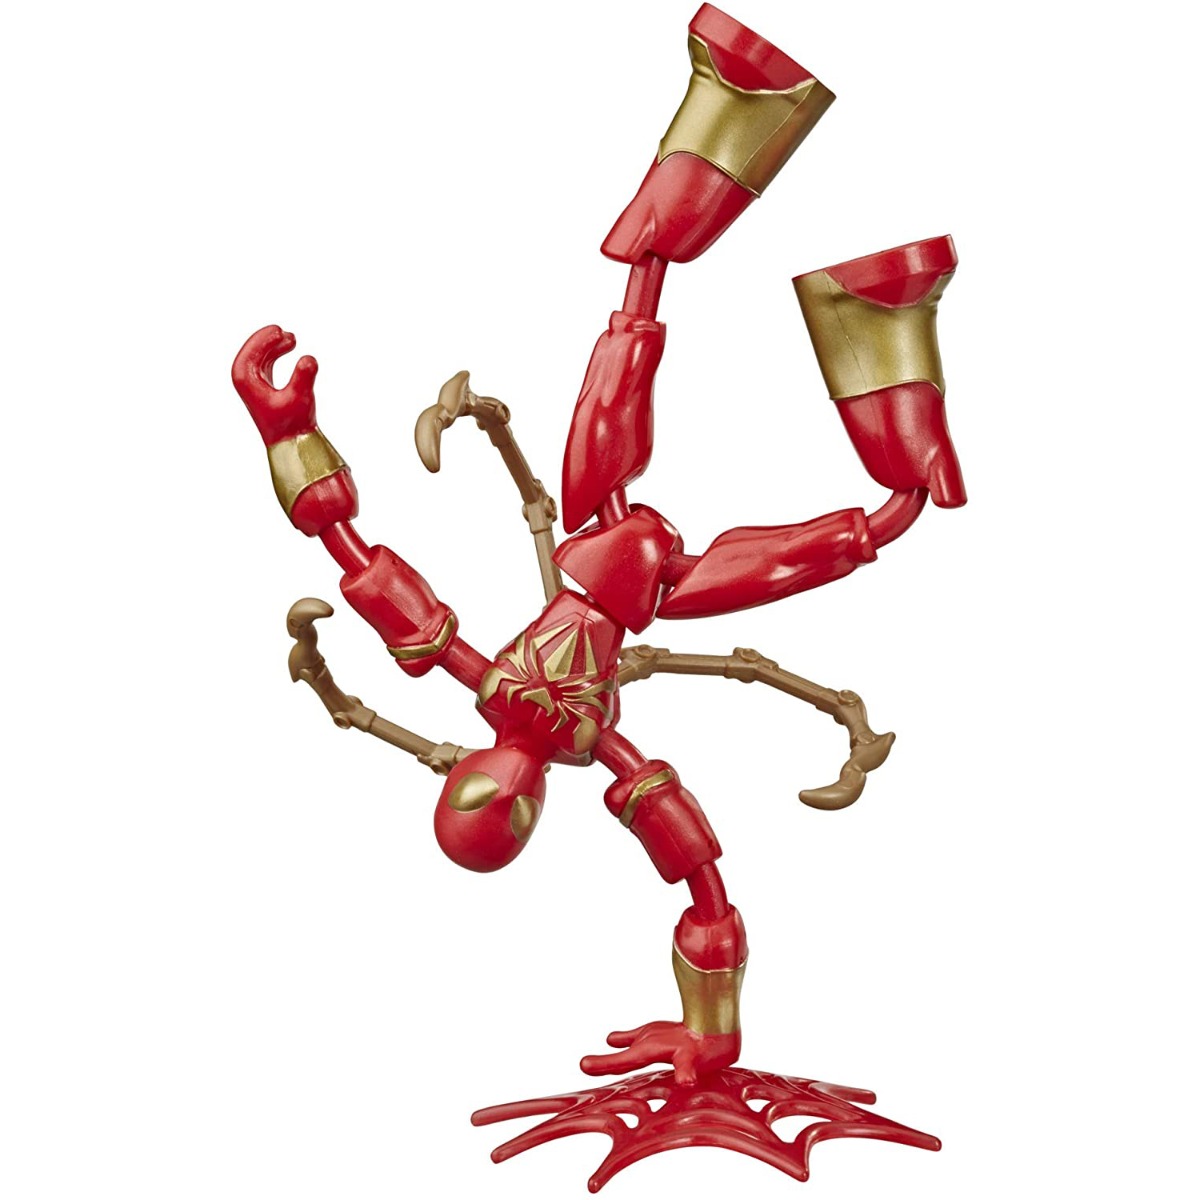 Figurina flexibila Spiderman Bend and Flex, Iron Spider E8972 noriel.ro imagine 2022